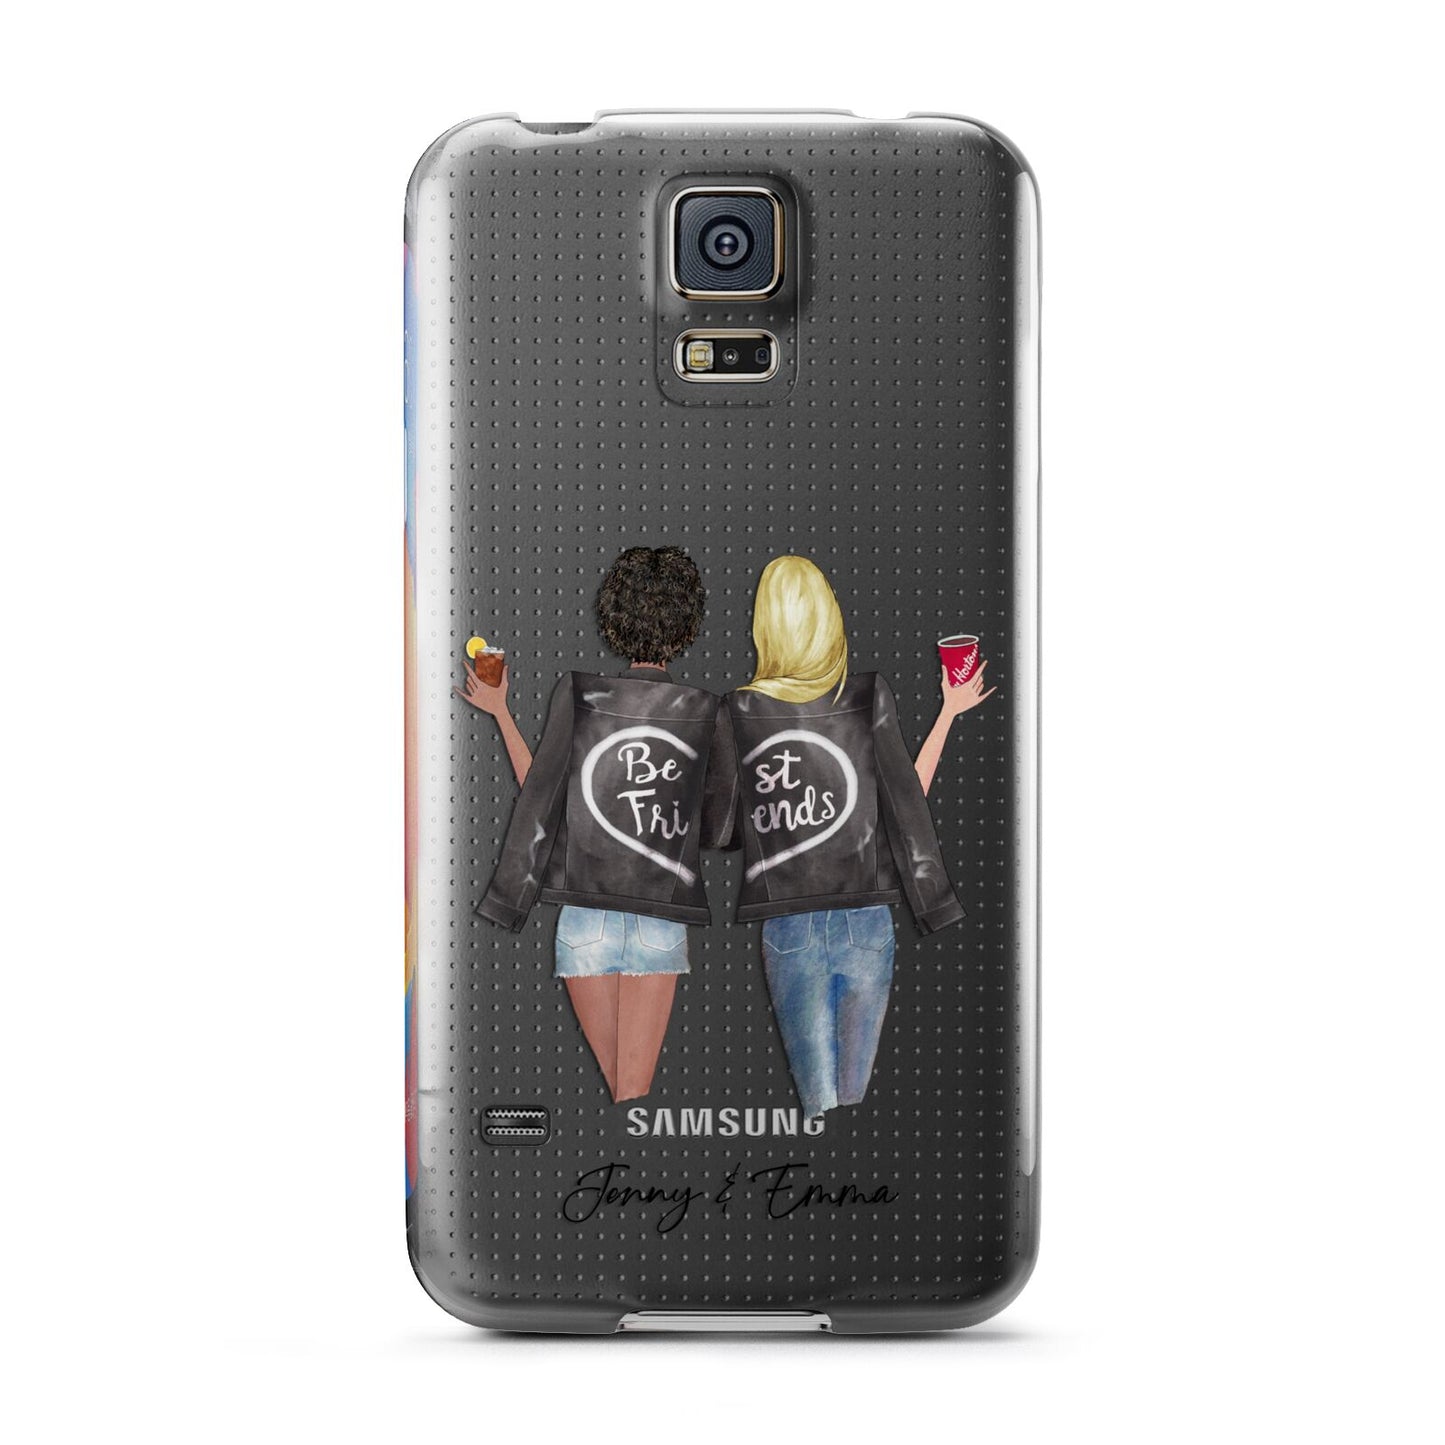 Best Friends Samsung Galaxy S5 Case